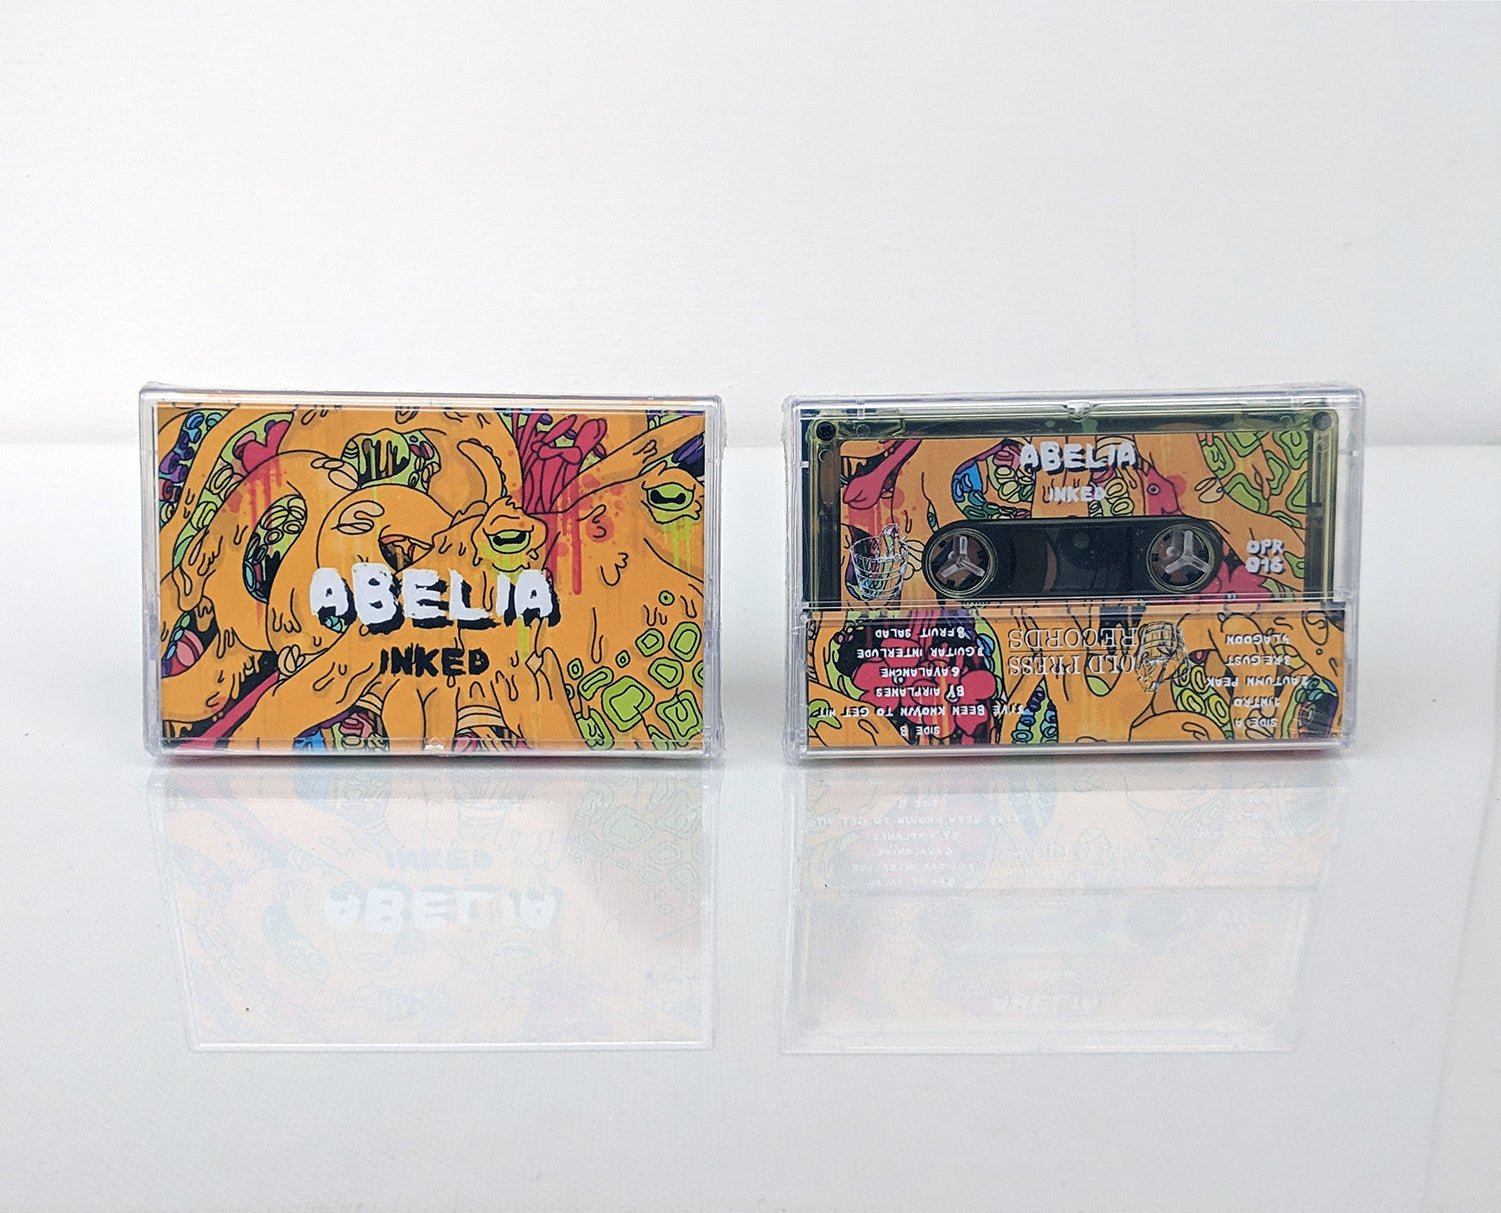 Abelia - "Inked" - Acrobat Unstable Records